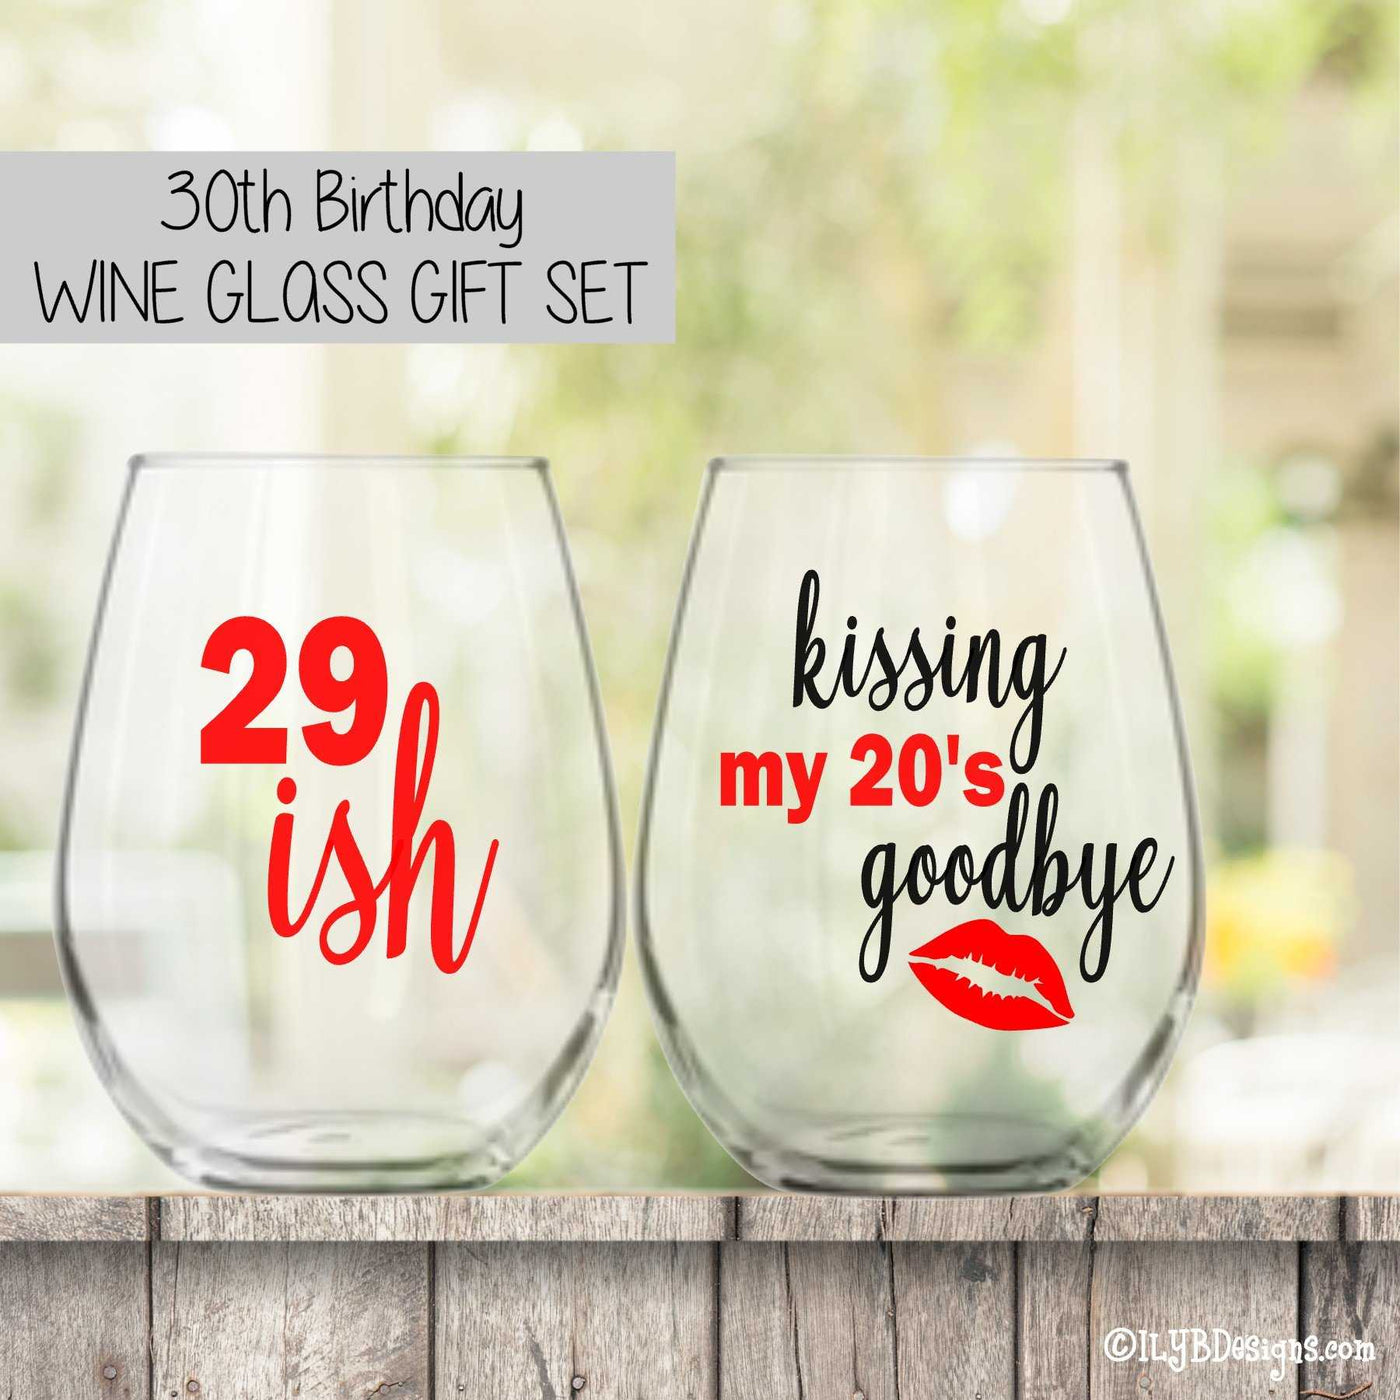 30th Birthday Wine Glass Set  -  29ISH / KISSING MY 20'S GOODBYE - ILYB Designs